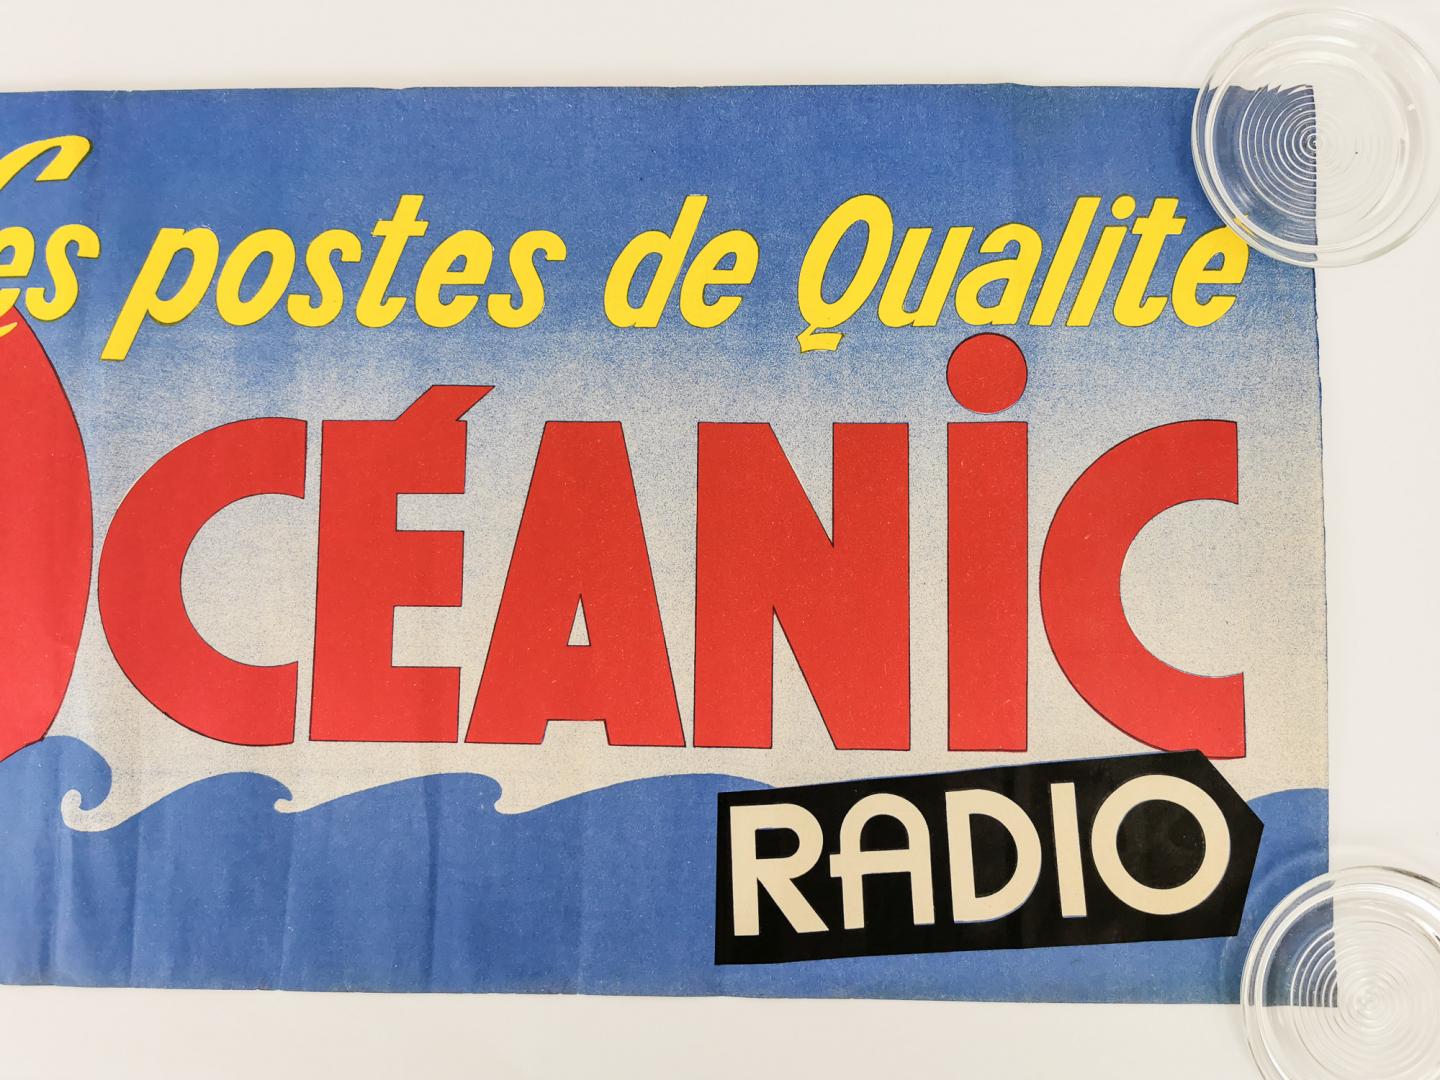 Le Penven (ontwerper) - Les postes de qualité - Océanic radio